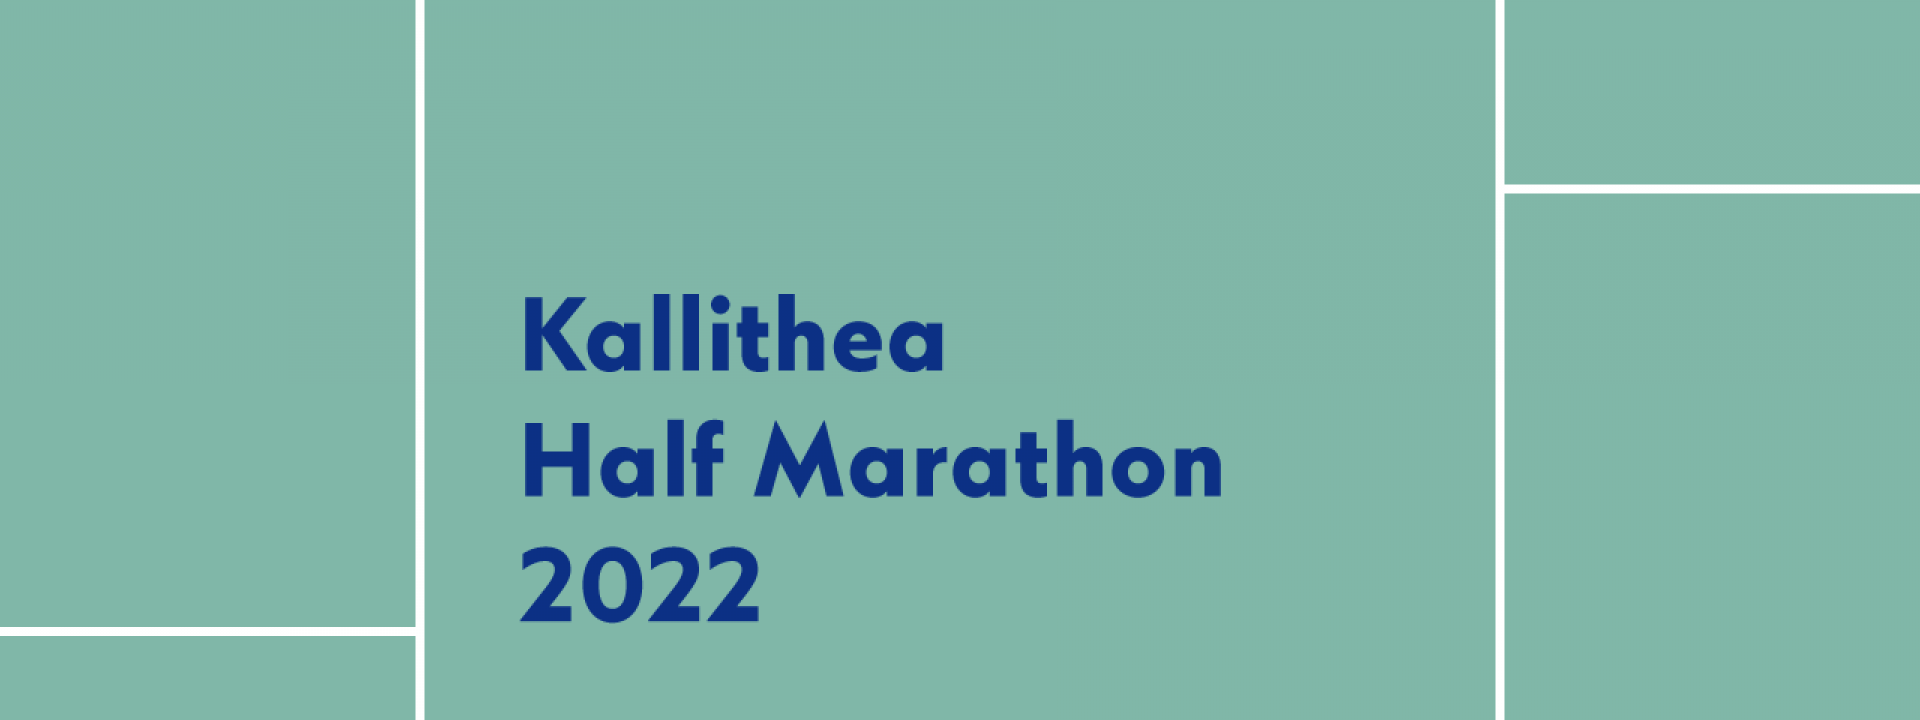 Kallithea Half Marathon 2022 - Εικόνα